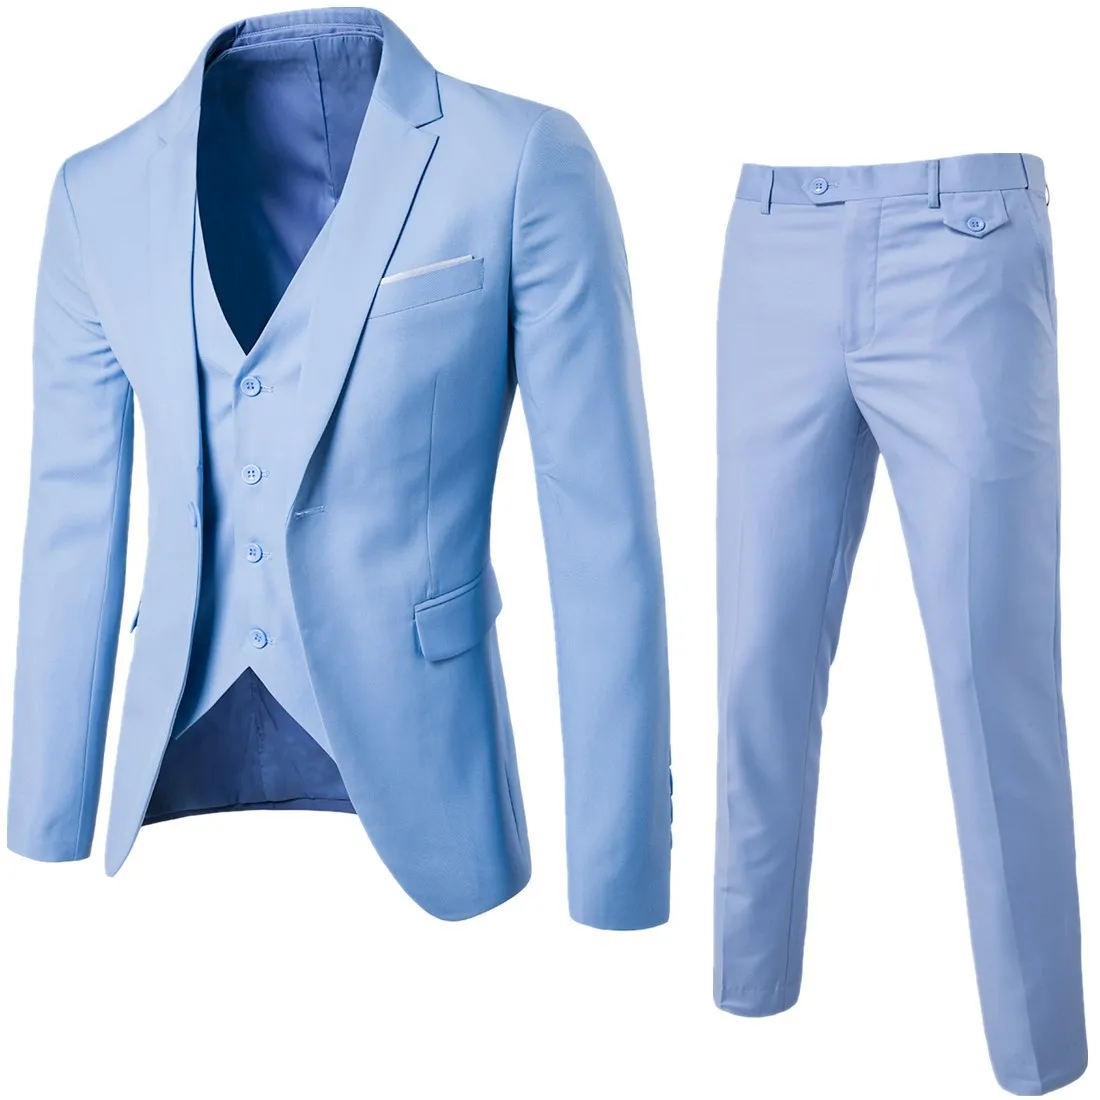 3 Piece Men's Wedding Suits Slim Business Office Jackets Sets Plus Size Blazer+ Pants + Vest for Men